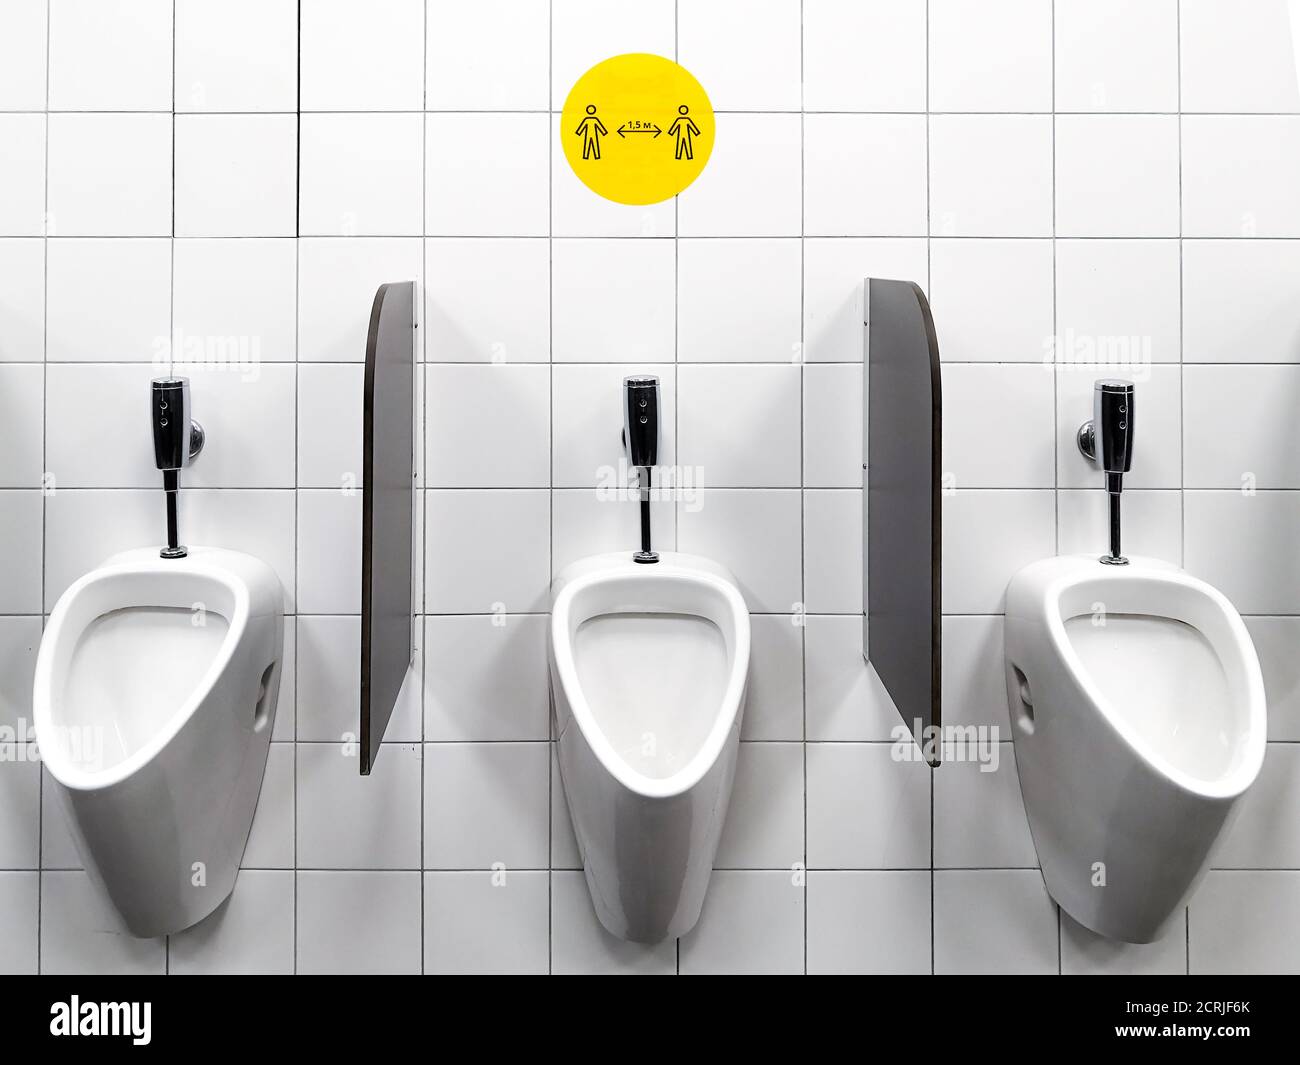 Urinale an der weißen Wand einer öffentlichen Männertoilette. Der gelbe Aufkleber an der Wand fördert soziale Distanzierung. Maßnahmen zur Verhinderung der Ausbreitung von Stockfoto